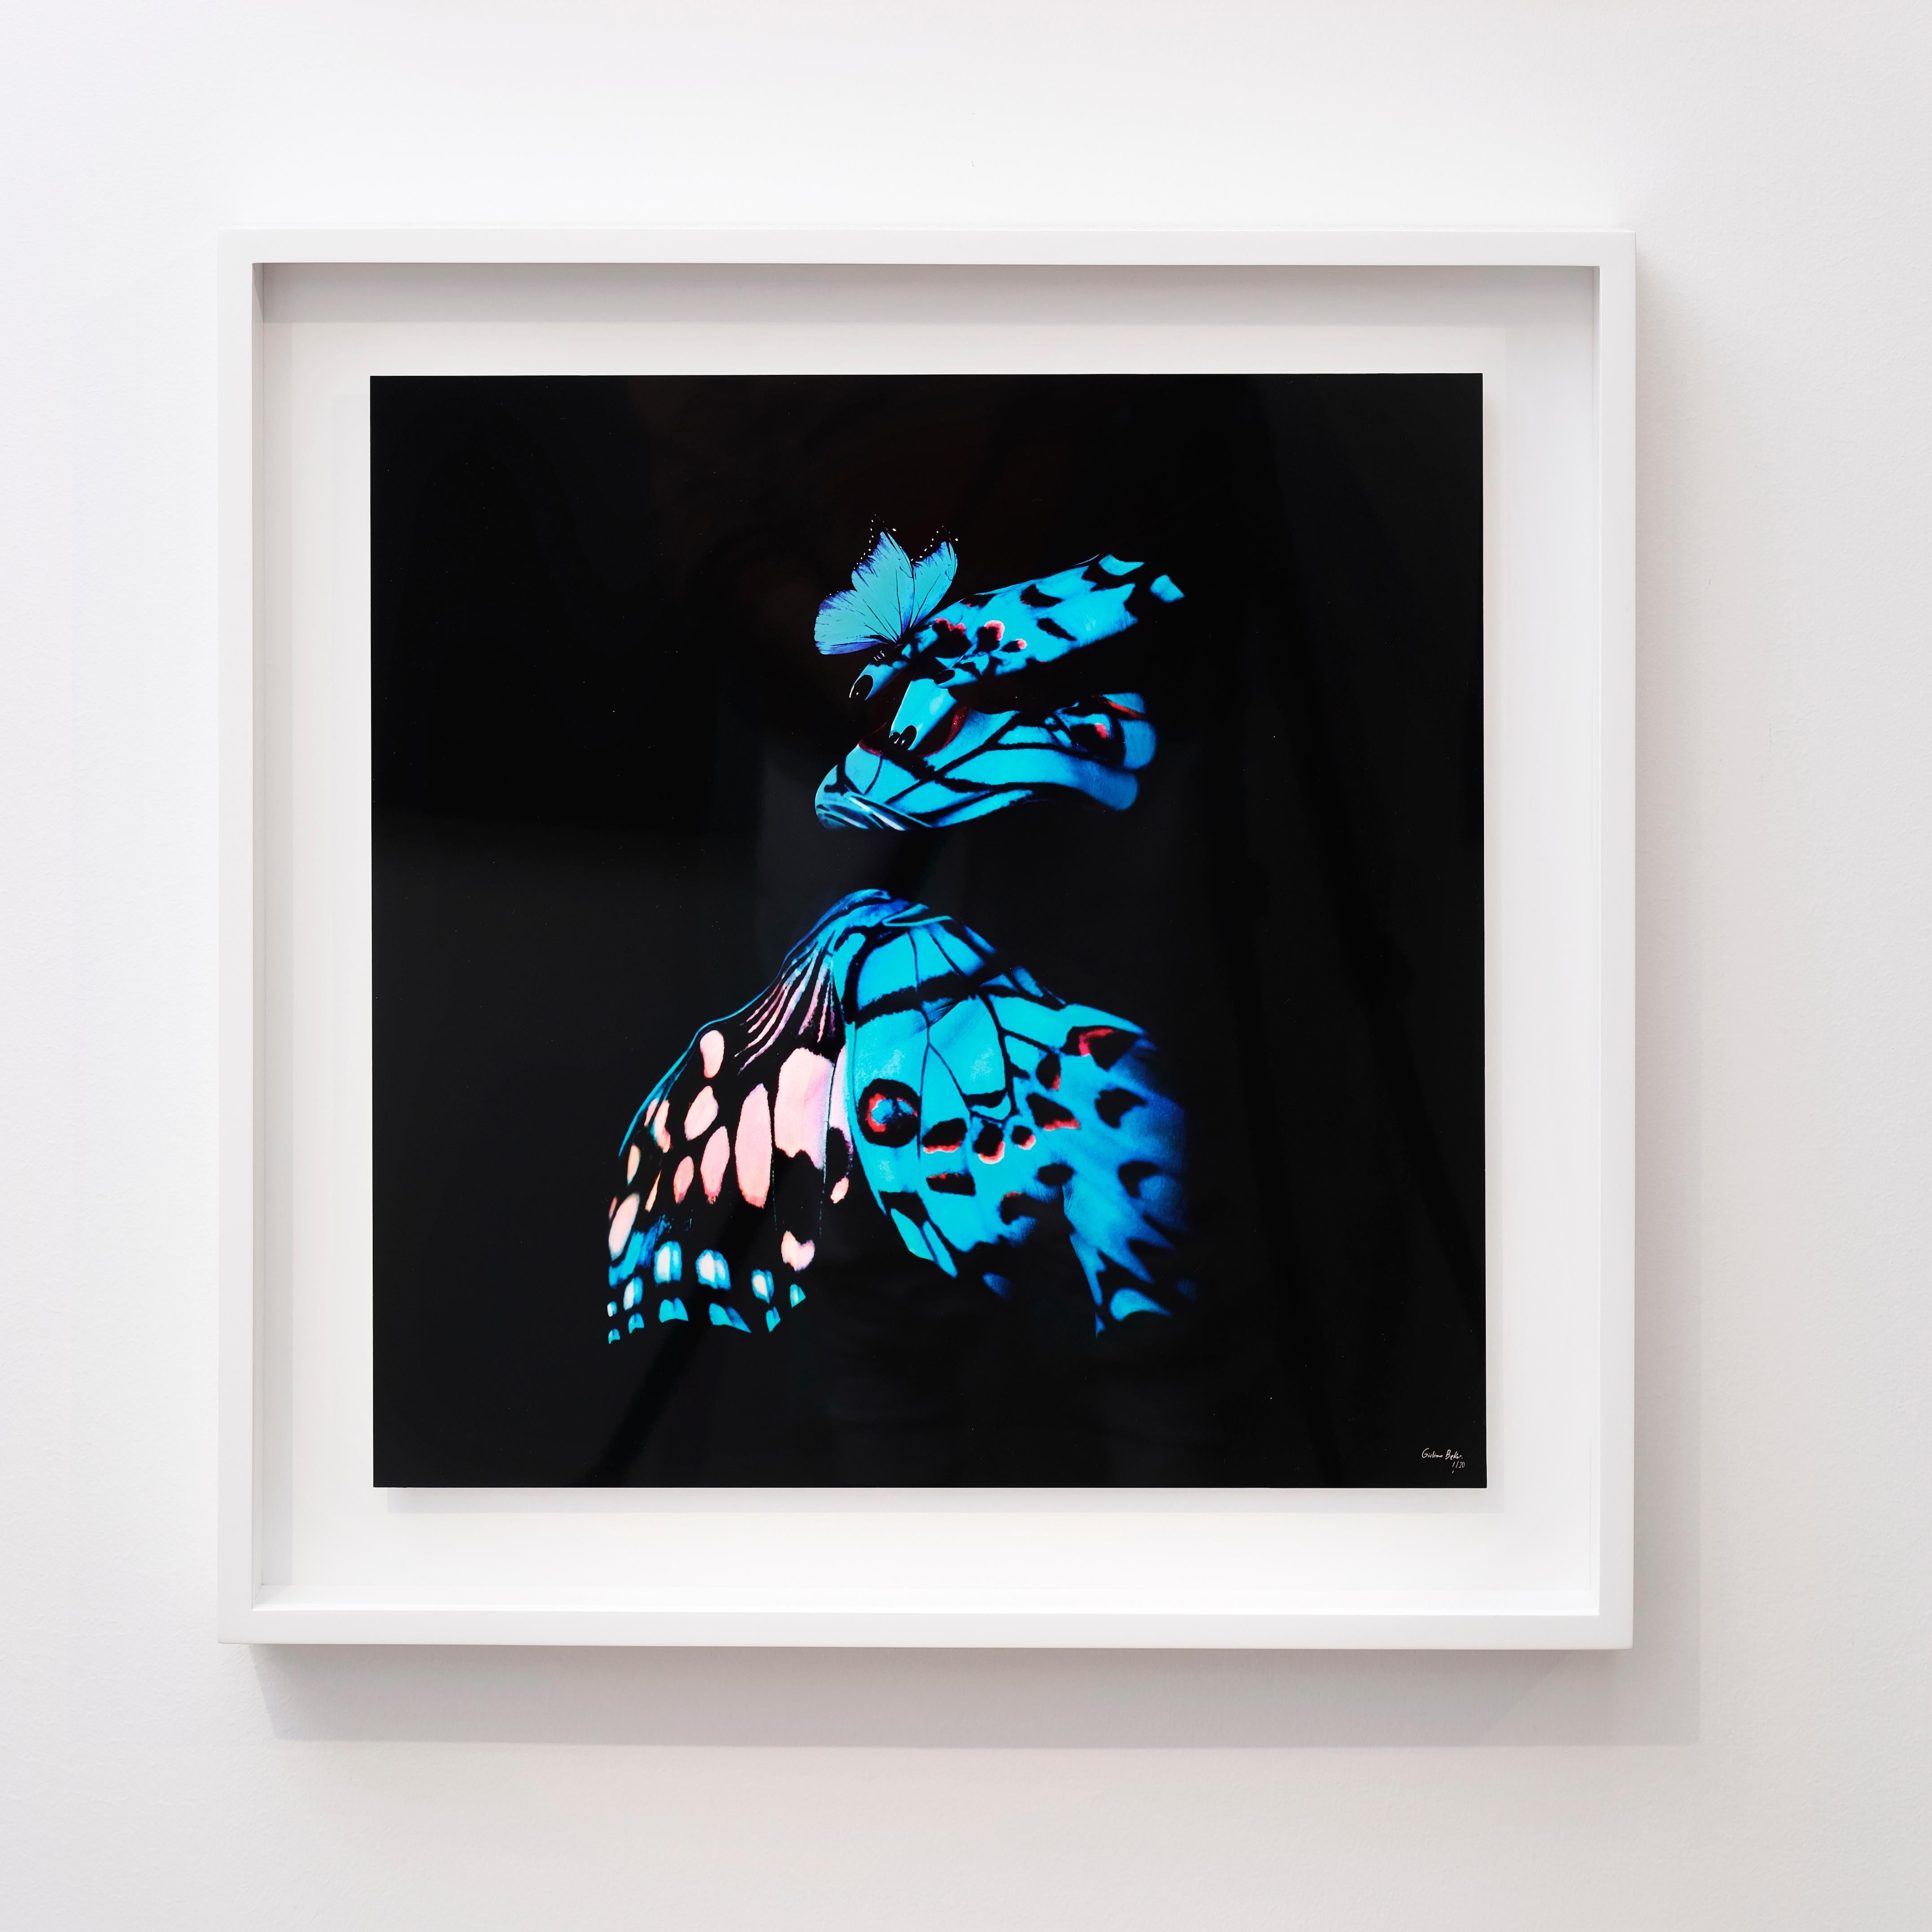 "Schmetterling 14" (gerahmt) Fotografie 16" x 16" in Auflage 1/20 von Giuliano Bekor